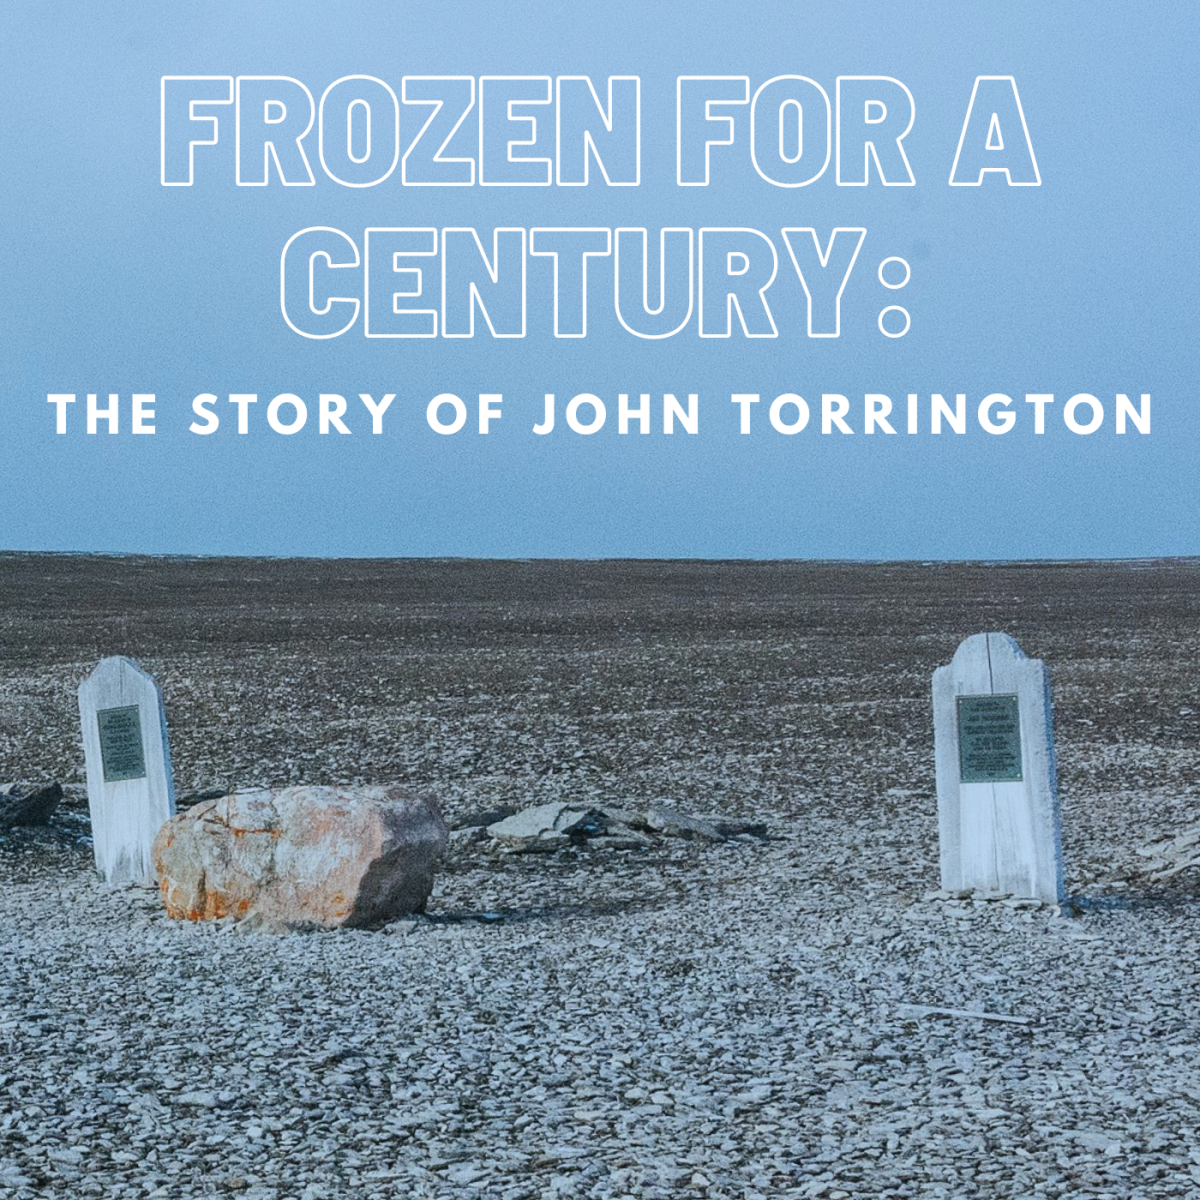 The story of John Torrington